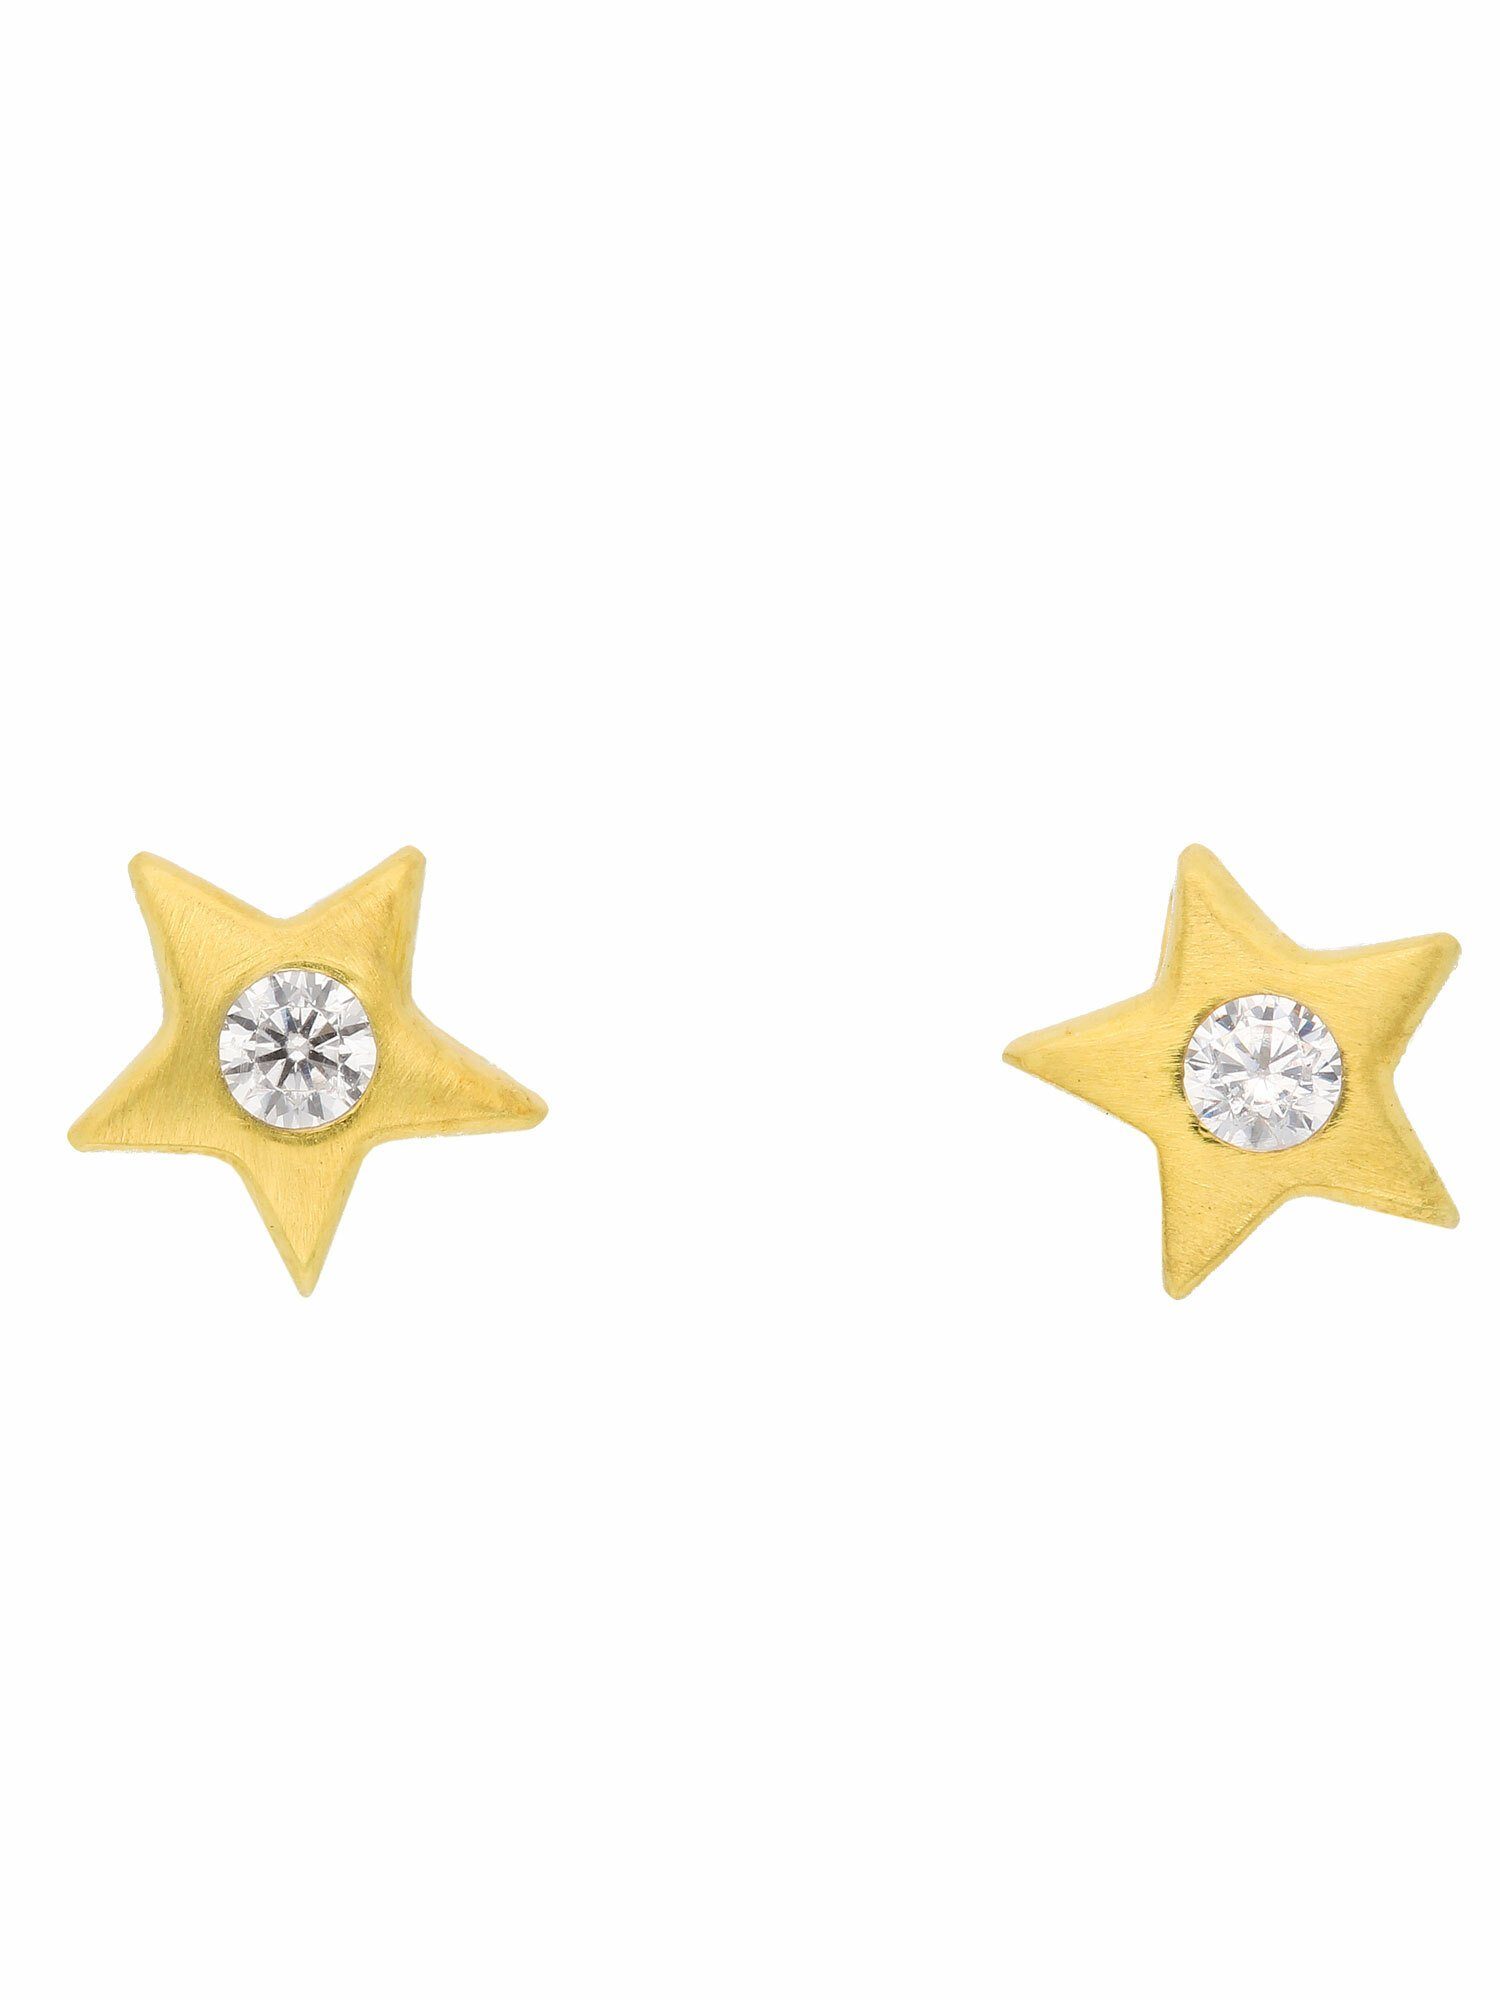 Damen Schmuck Adelia´s Paar Ohrhänger 1 Paar 333 Gold Ohrringe / Ohrstecker Stern mit Zirkonia, 333 Gold Goldschmuck für Damen